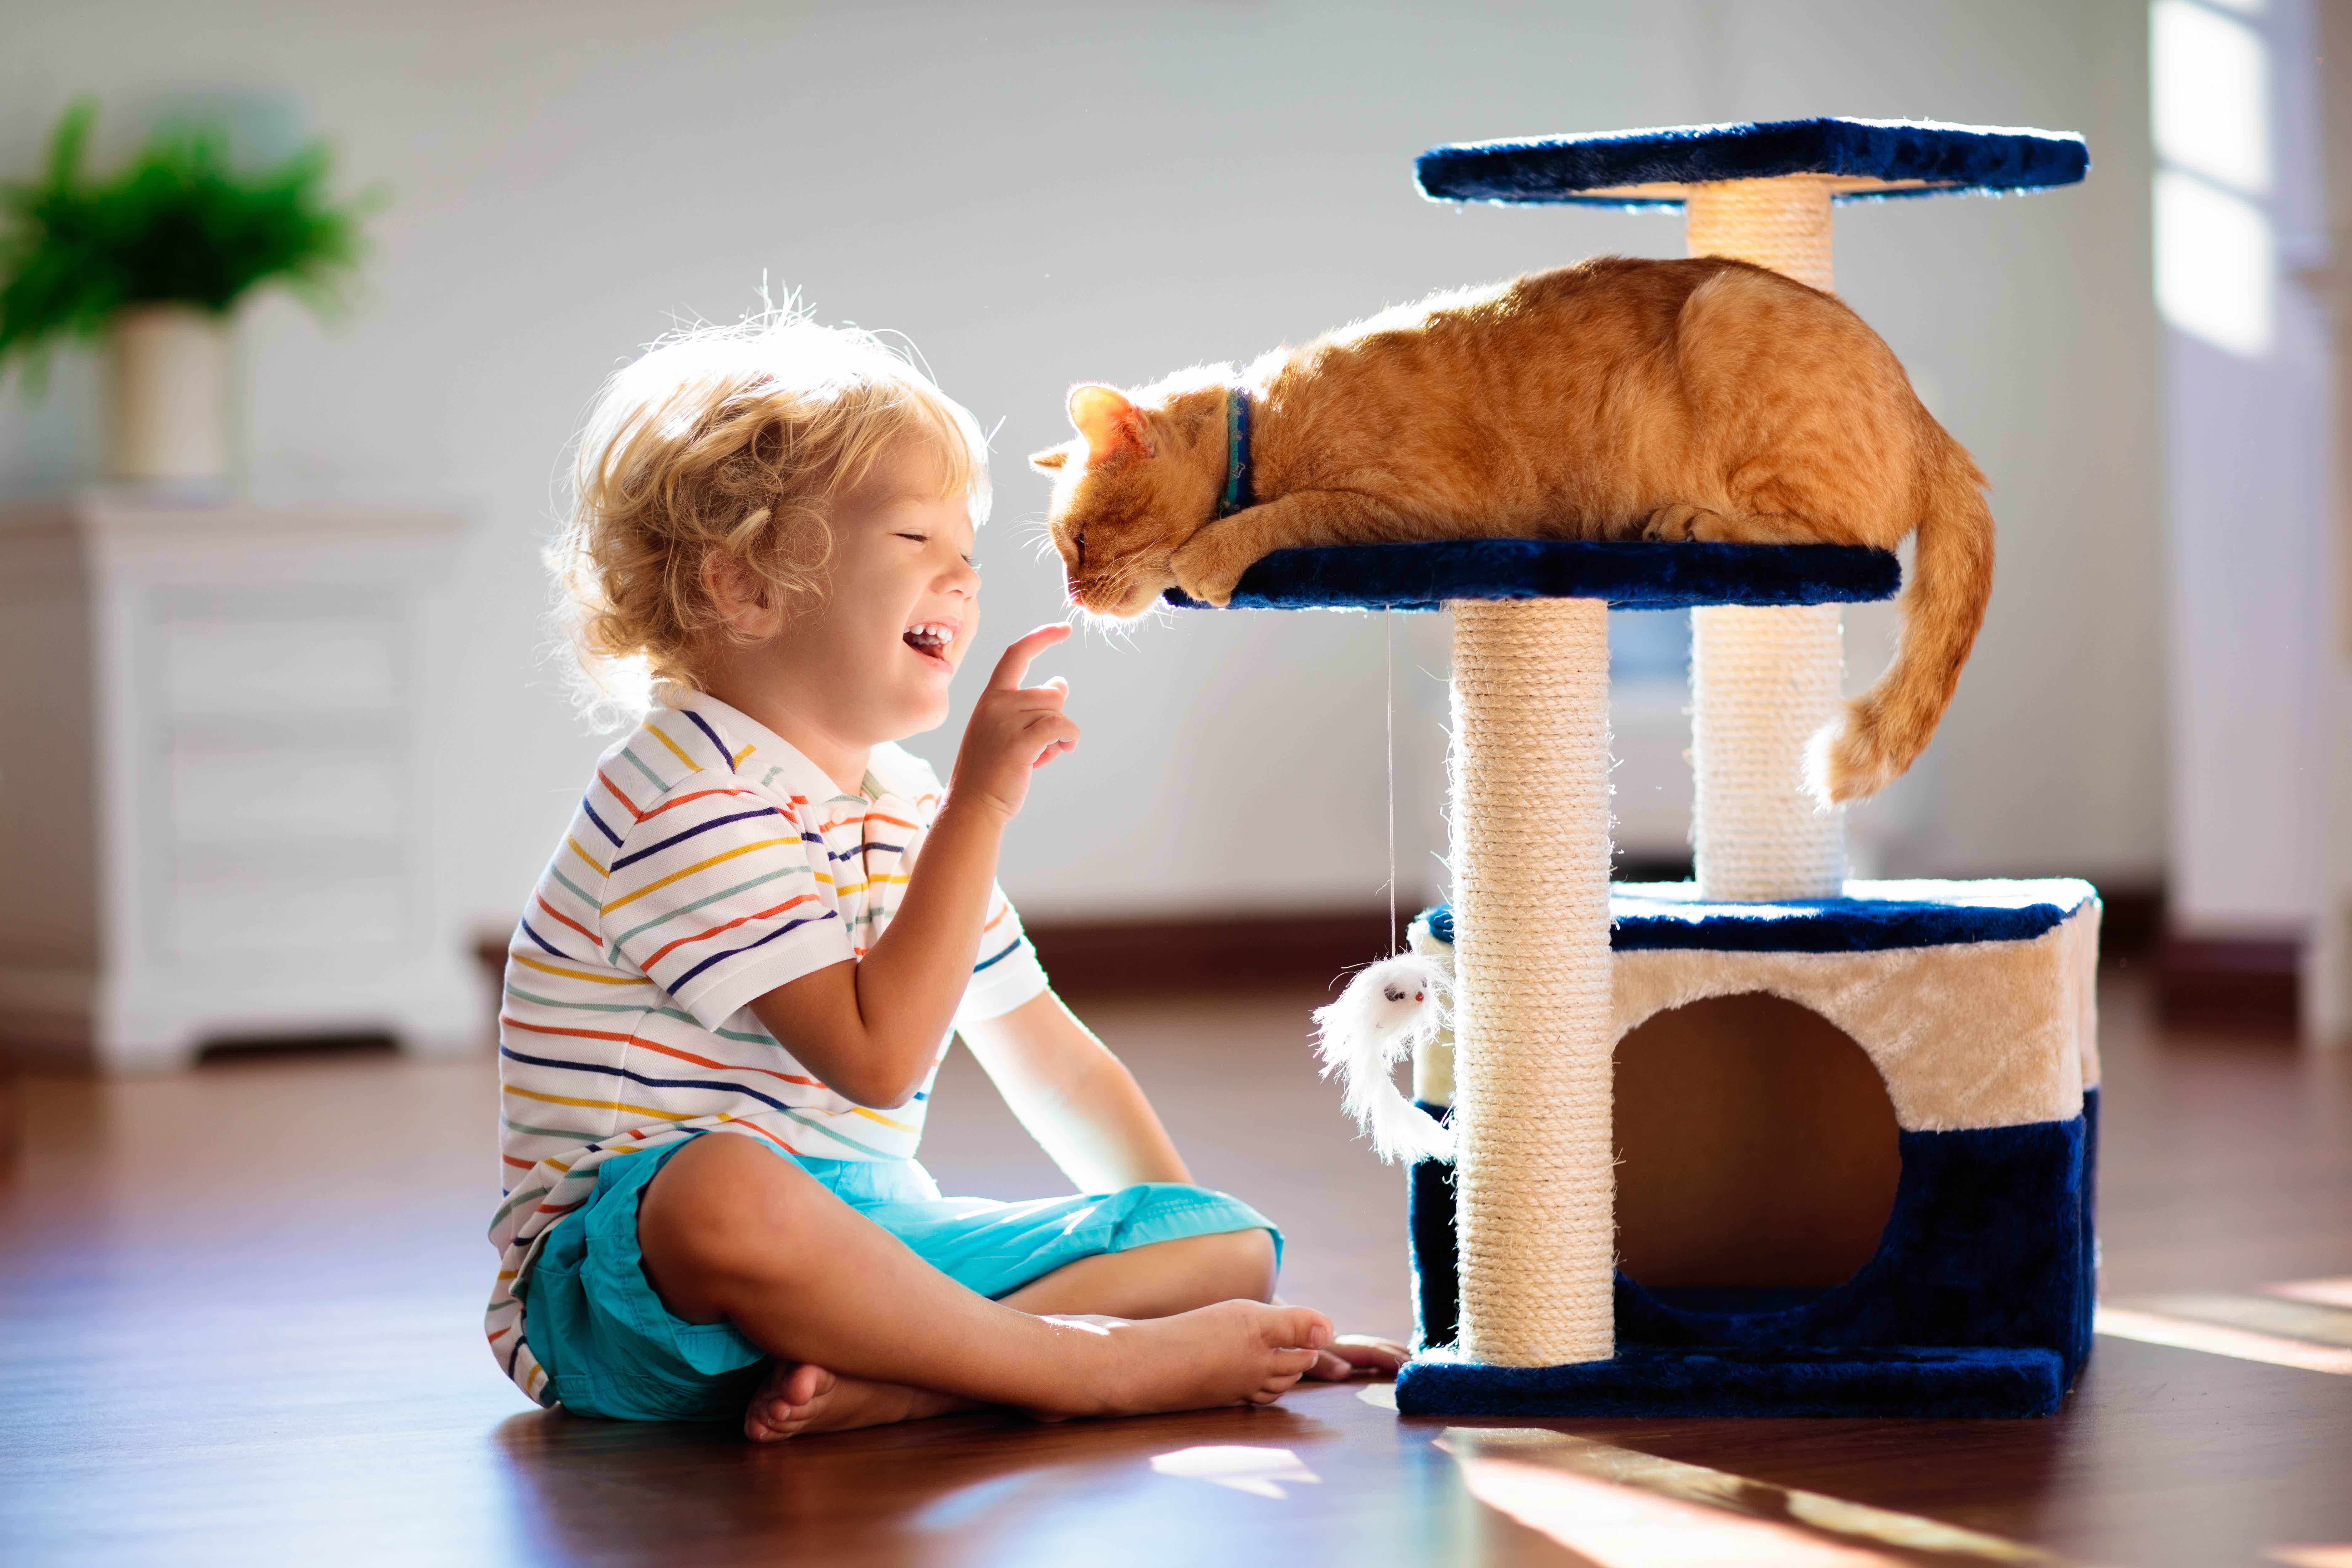 Veja algumas dicas para que a criança e o pet tenham uma boa relação! Fonte: AdobeStock.